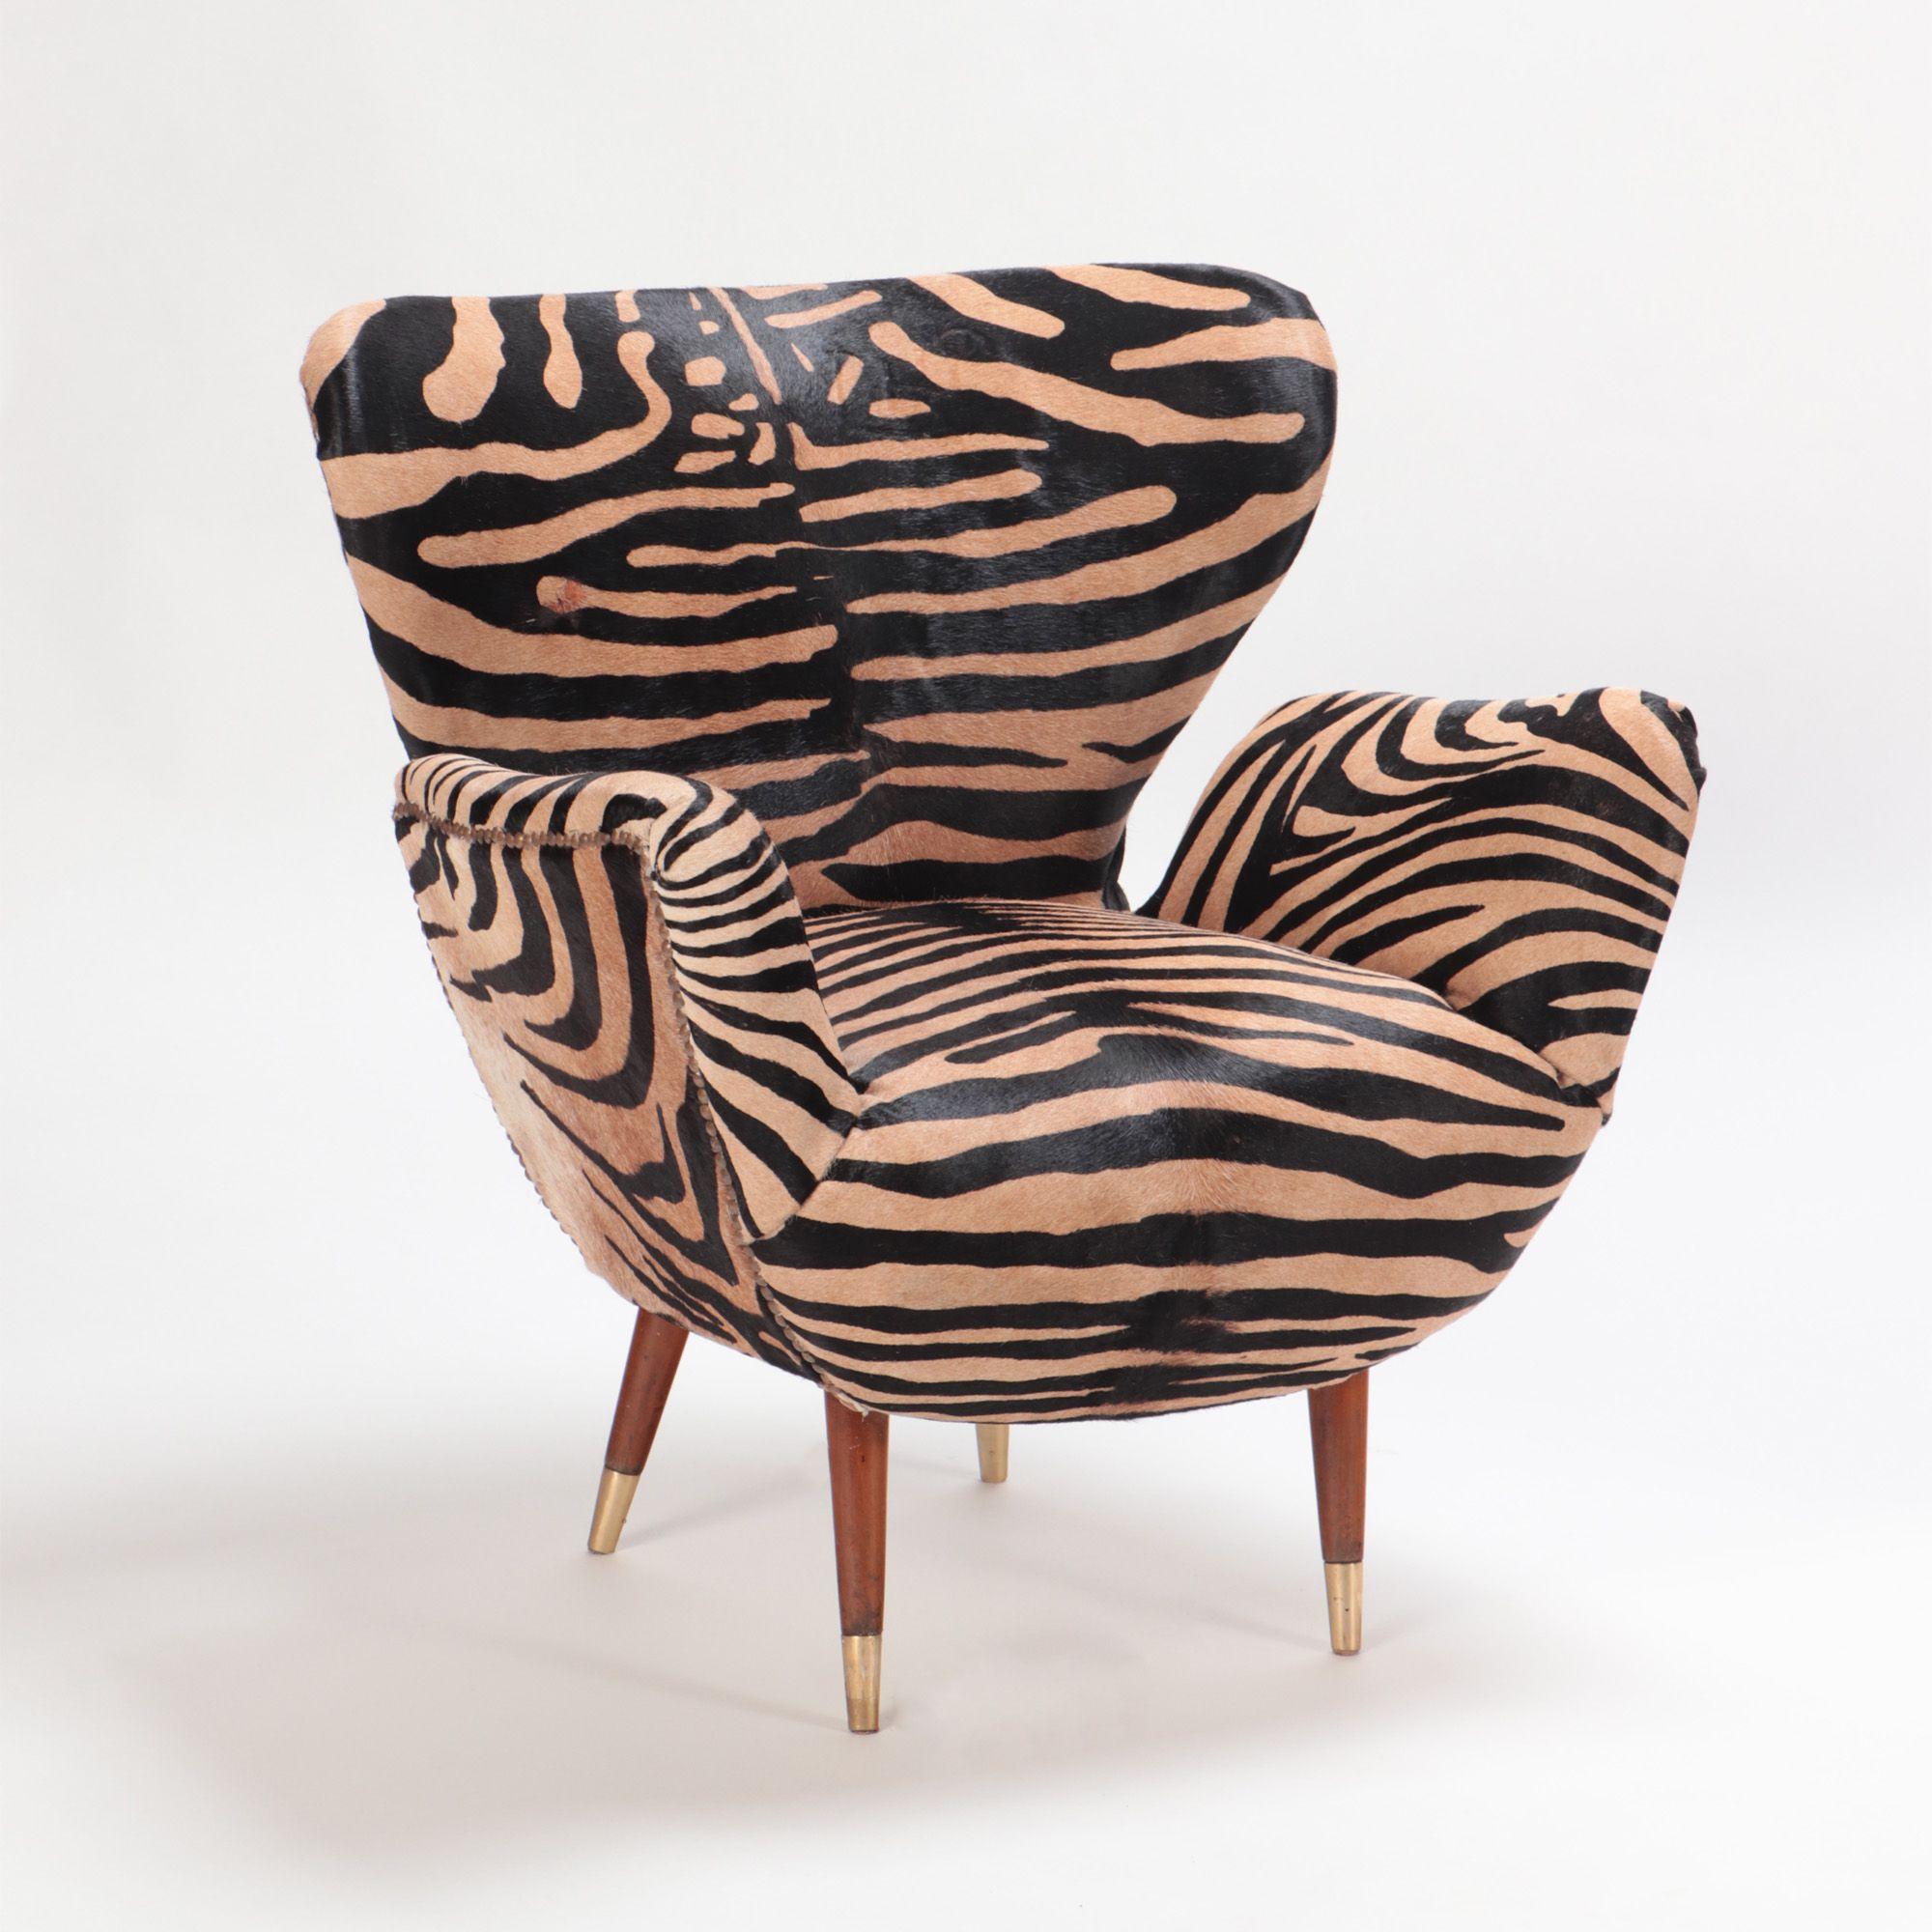 Une paire de chaises italiennes du milieu du siècle, tapissées de cuir zébré, dans le style de Paolo Buffa, vers 1950. Pieds en bois évasés se terminant par des détails en laiton.